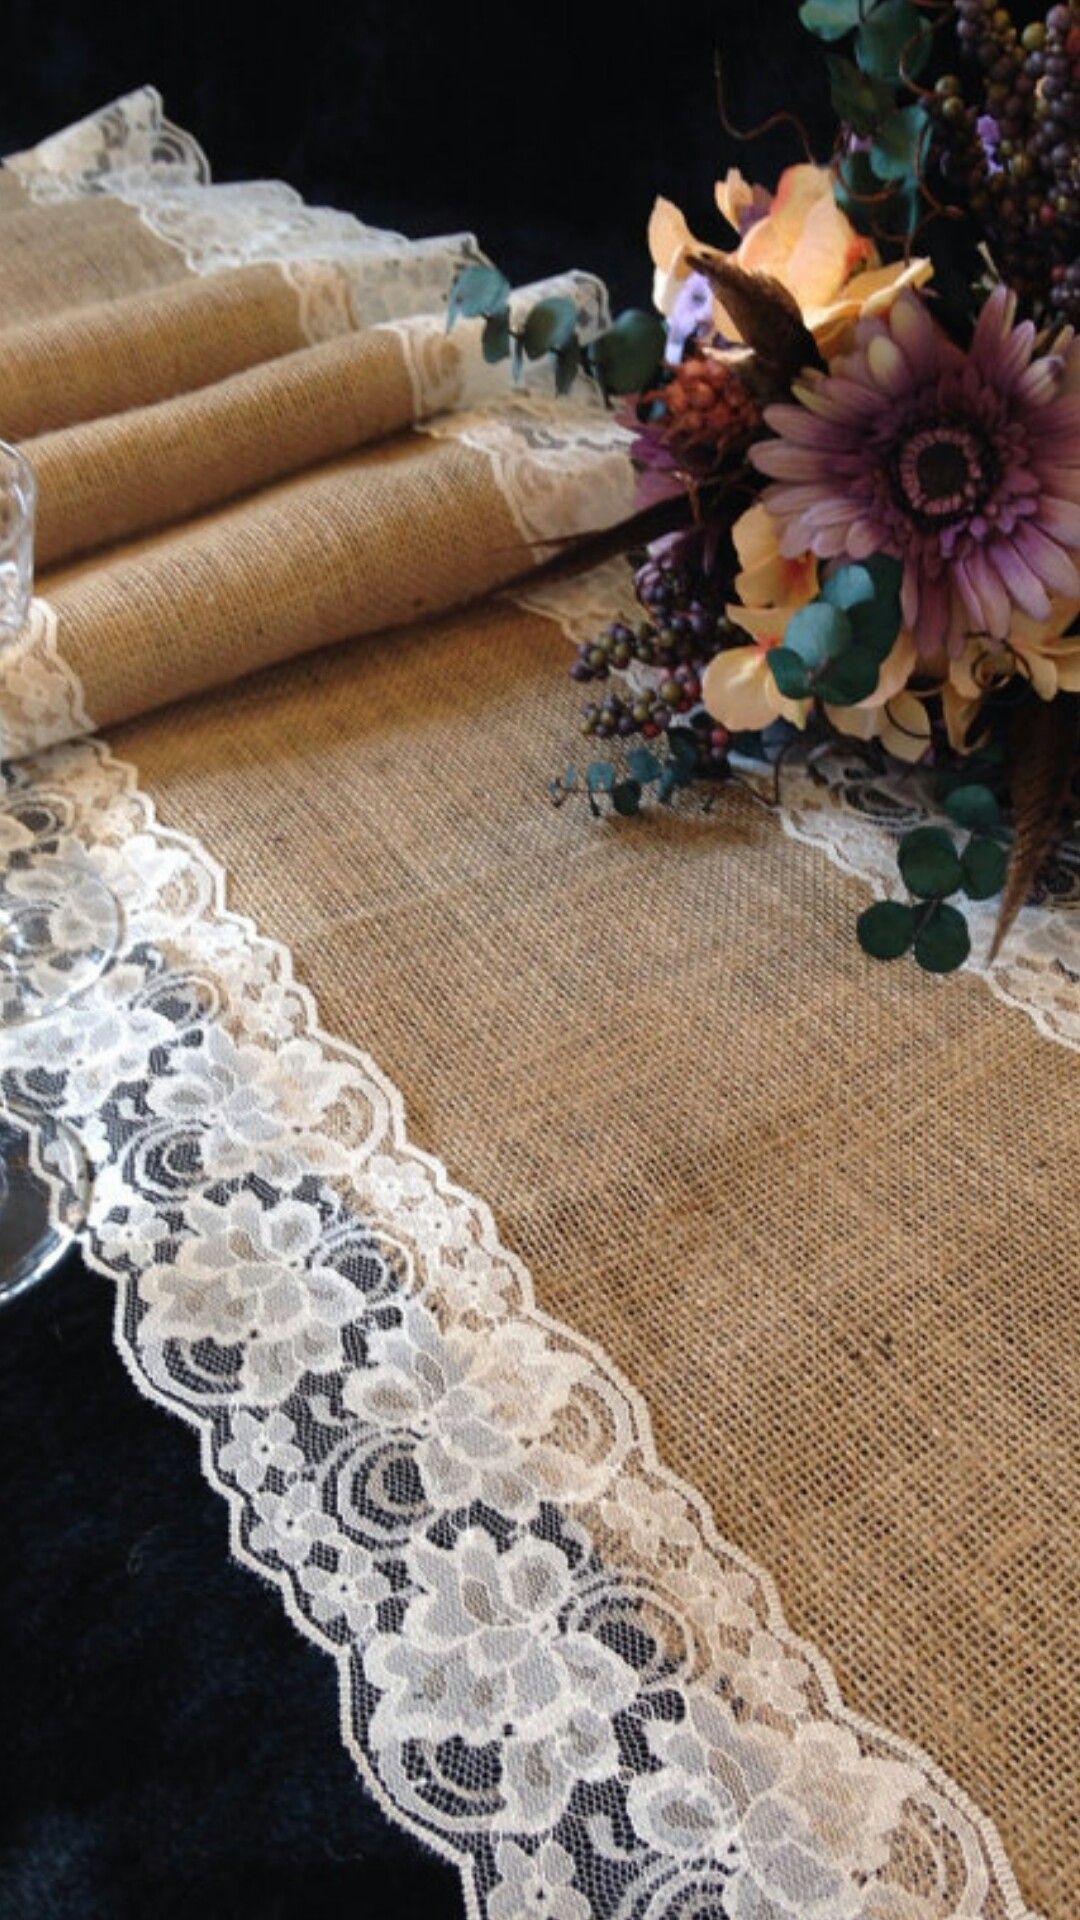 Vải gai là chất liệu dễ dàng kết hợp với ren để tạo thành đường viền đẹp mắt. Nếu khéo tay, bạn có thể tự làm mẫu khăn trải ngang mà không hề tốn kém nhiều chi phí. 